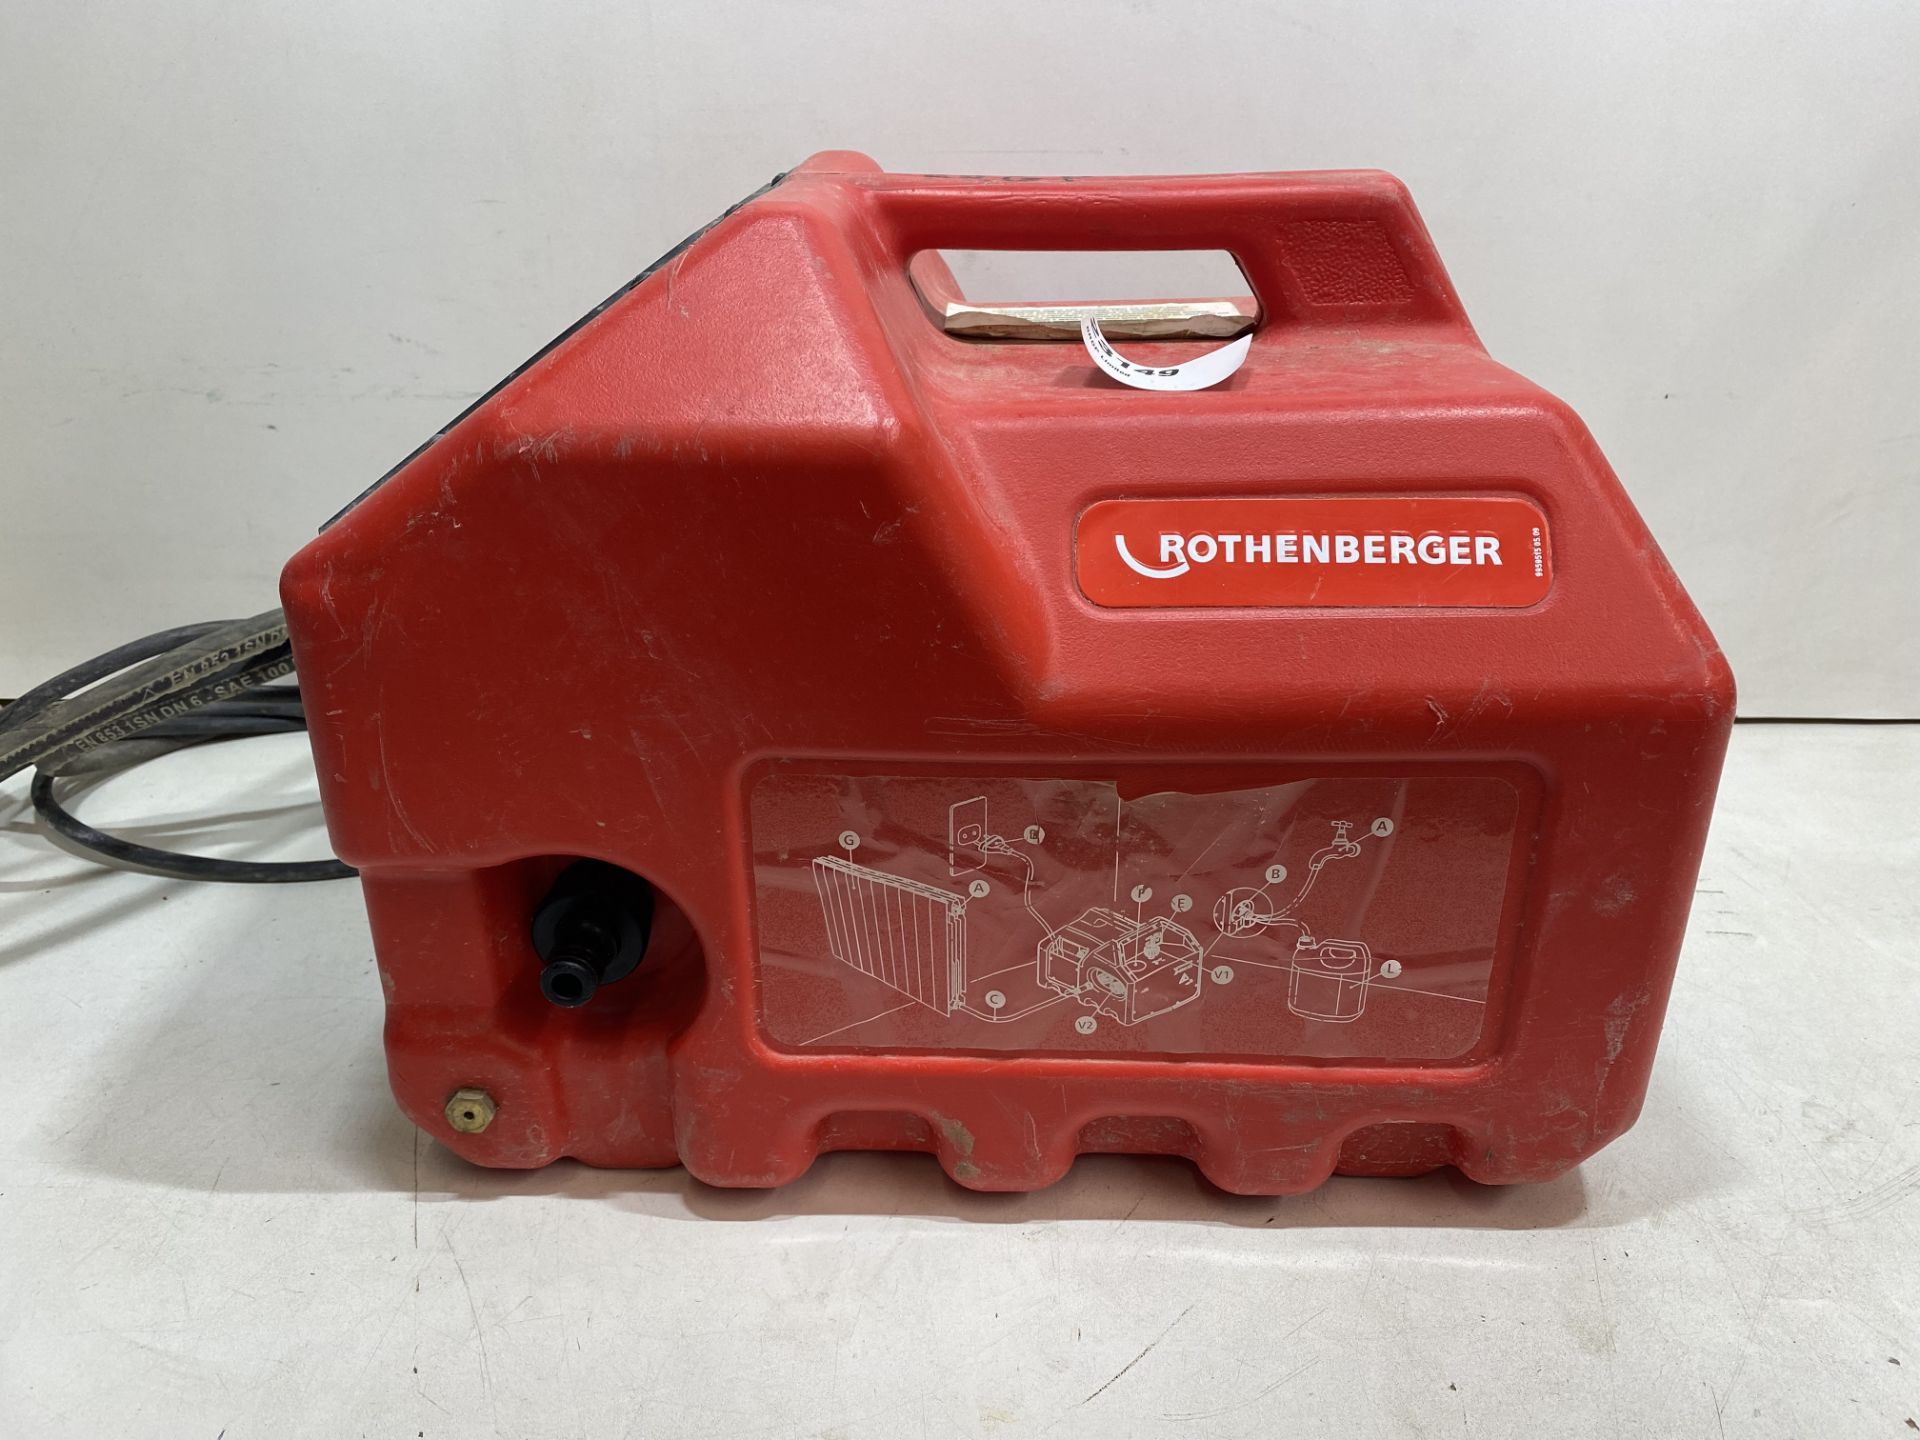 Rothenberger RP Pro III Electric Pressure Testing Pump, 40bar (500psi), 110v or 230v - Image 4 of 8